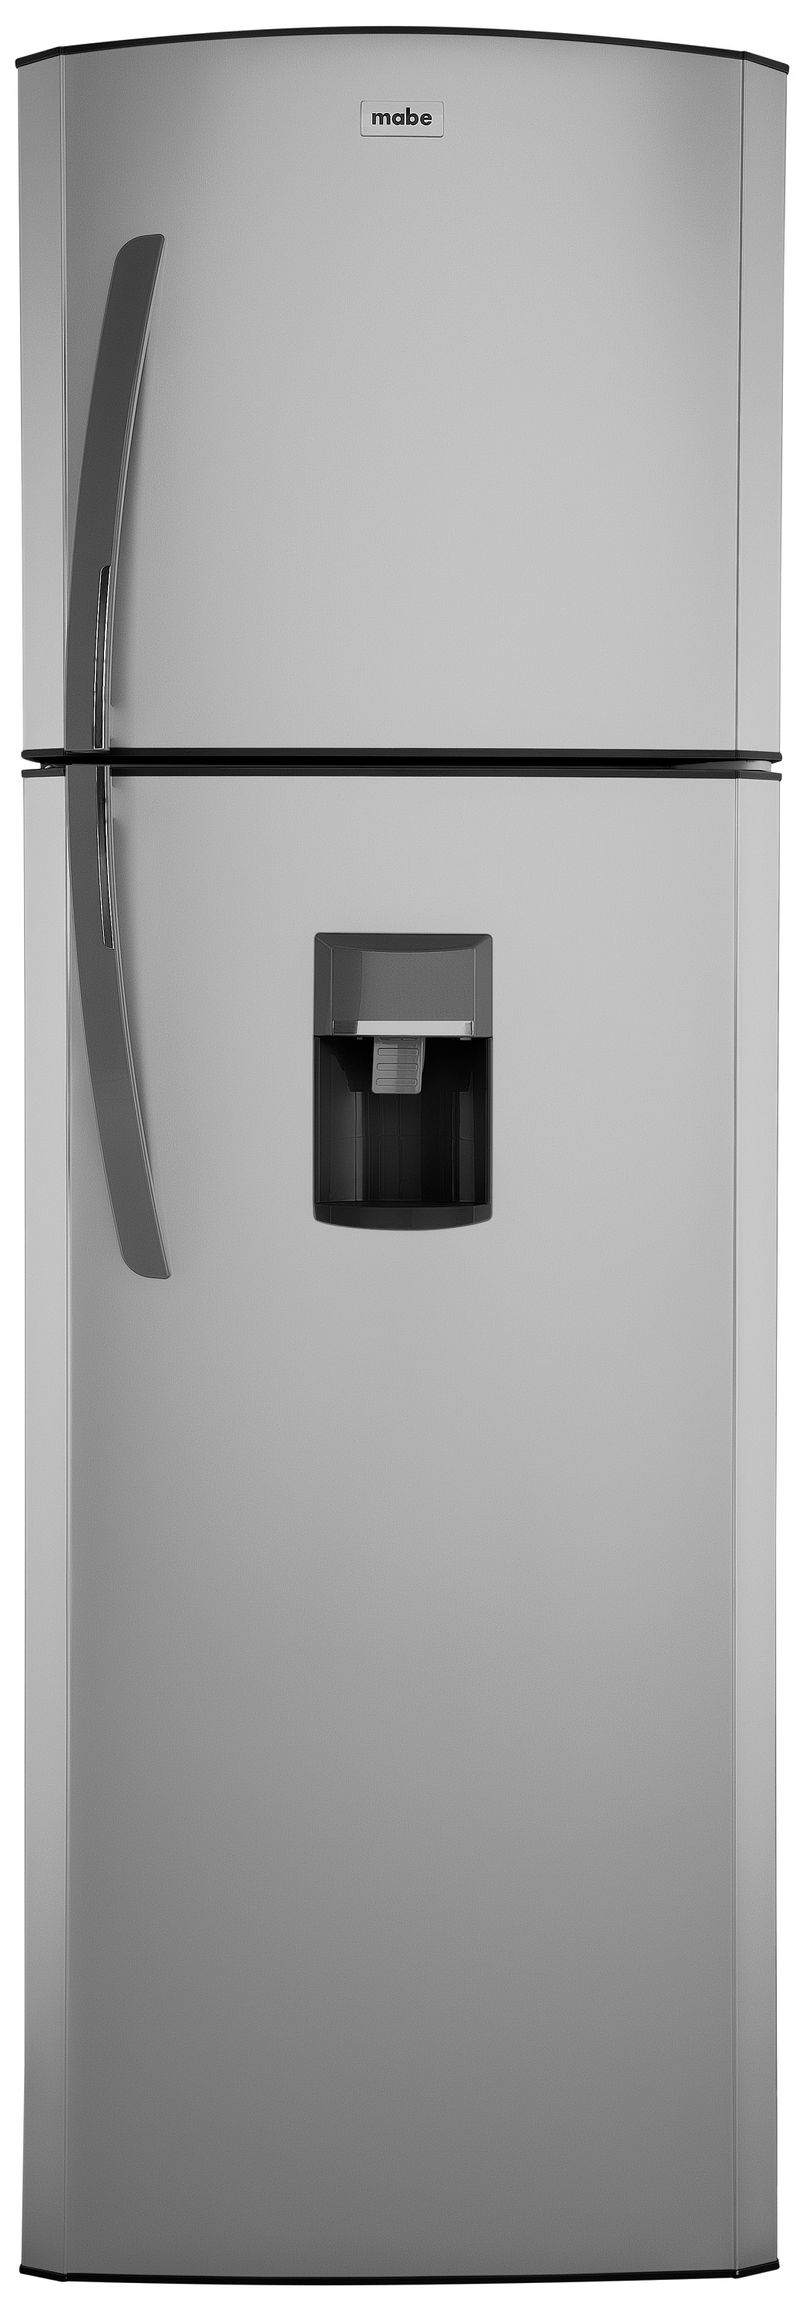 Refrigeradora-Mabe-de-11-pies-No-Frost-RMA300FJNU